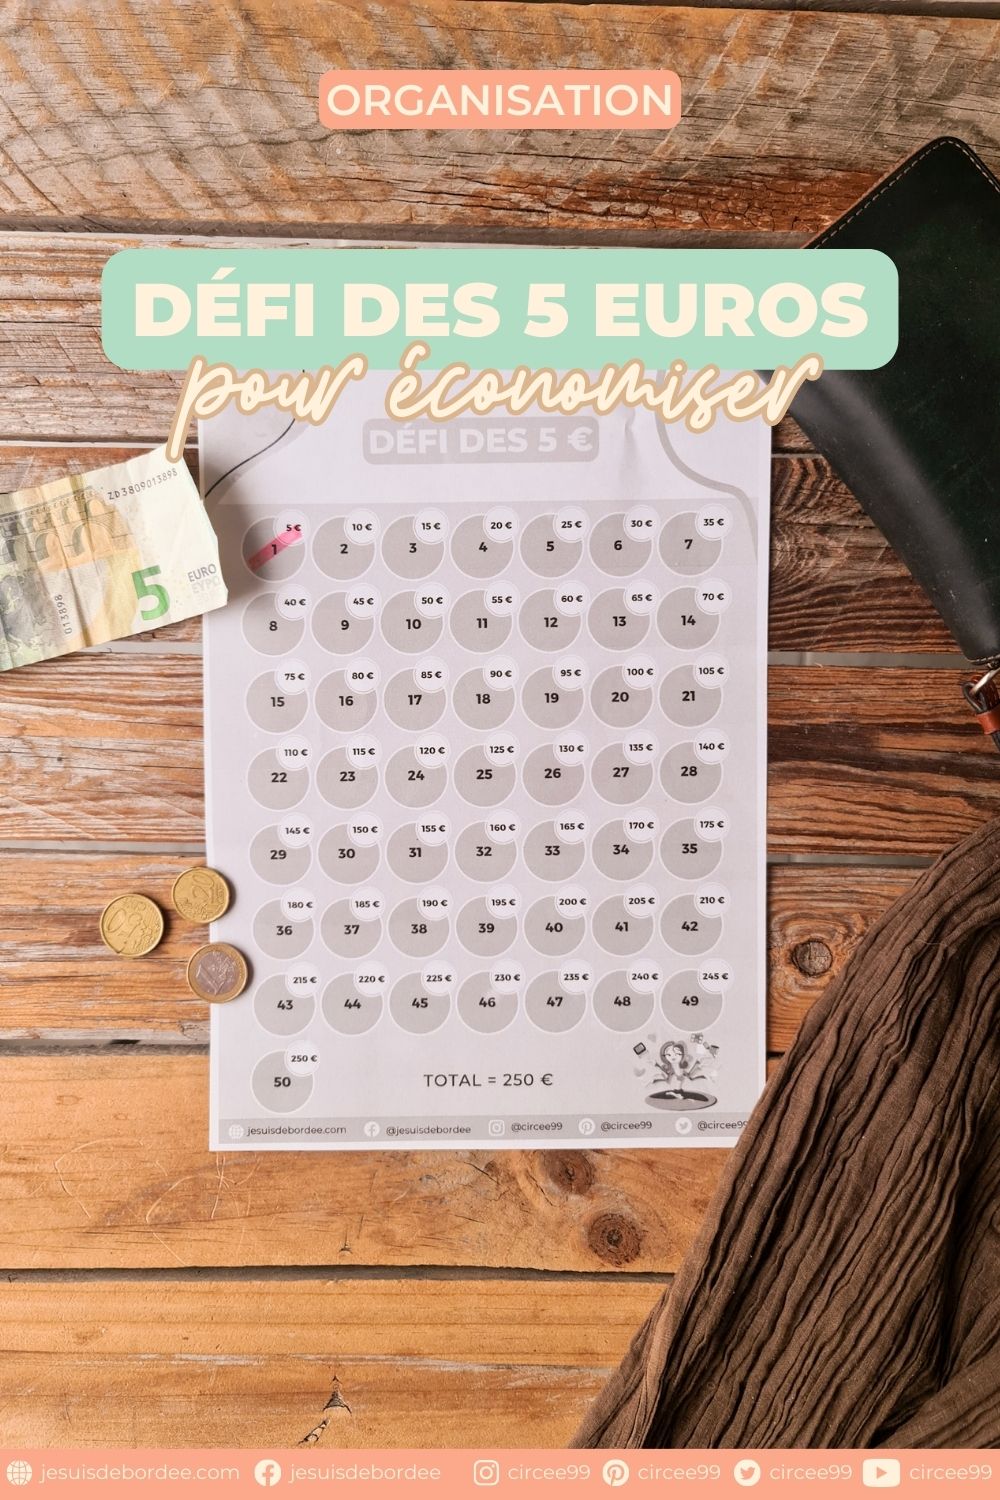 Le défi des 5 euros, avec son tracker à imprimer - Je suis débordée